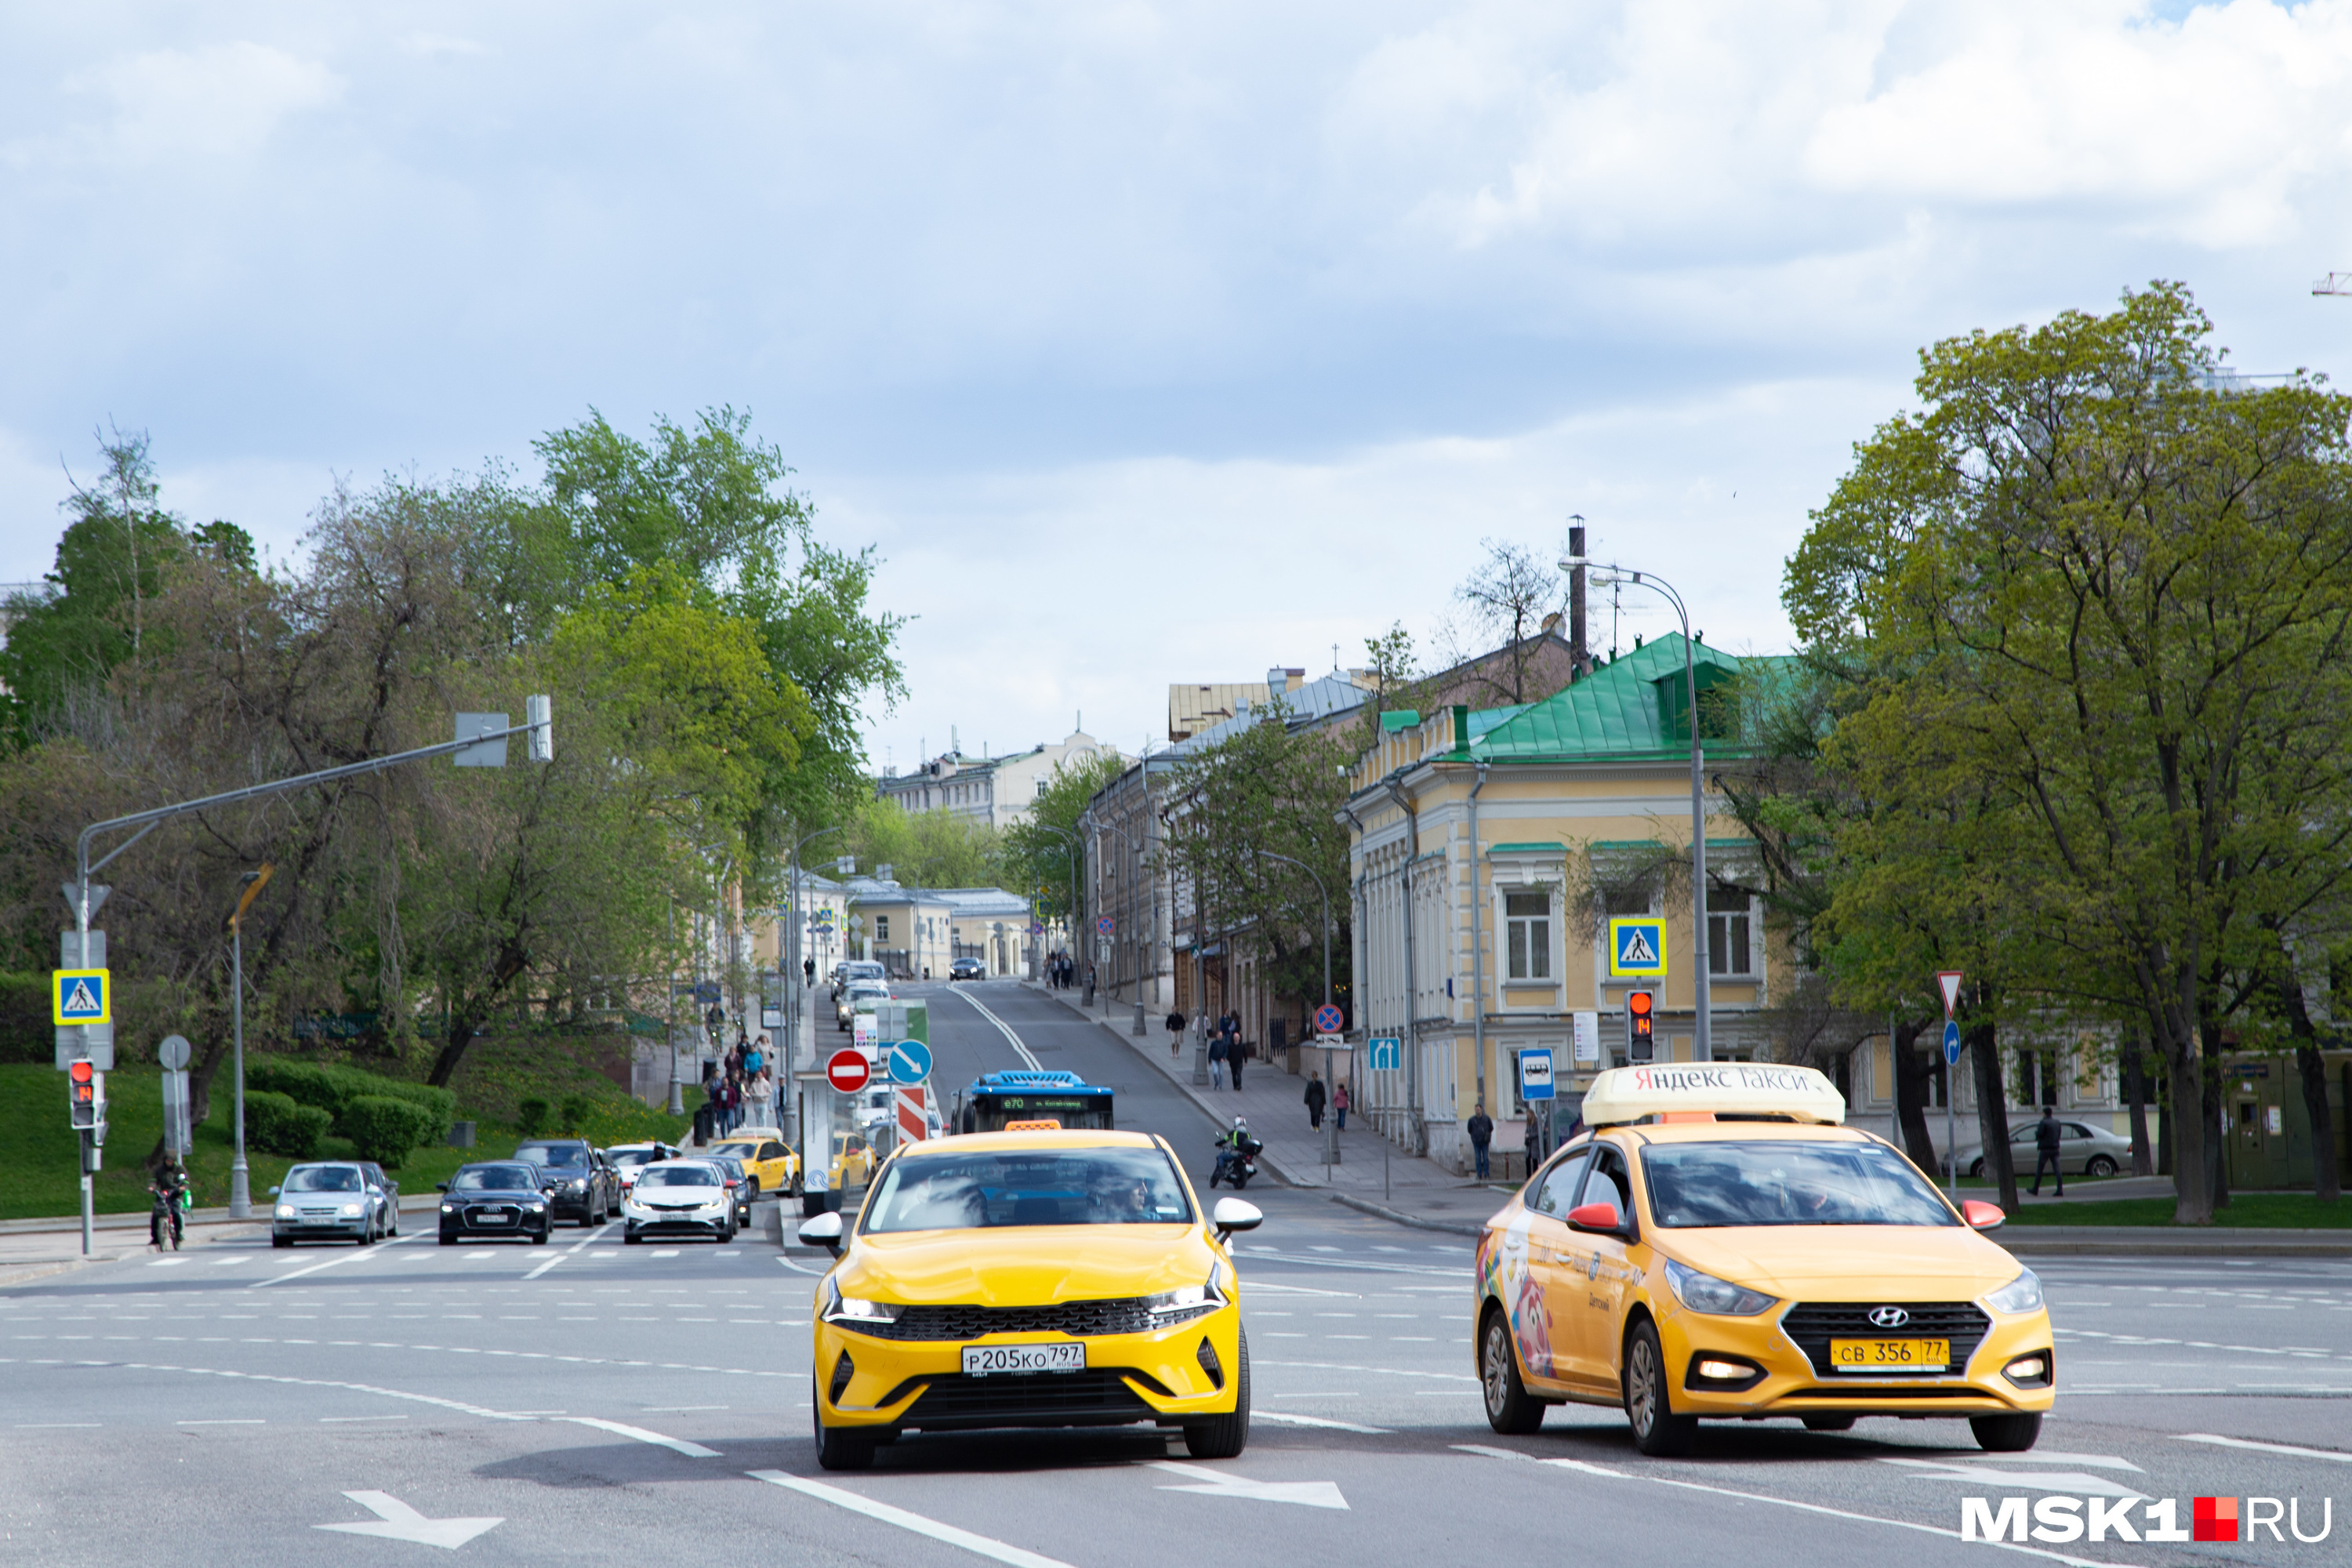 Такси в Барнауле и Бийске подорожало во время жары — рассказываем, почему